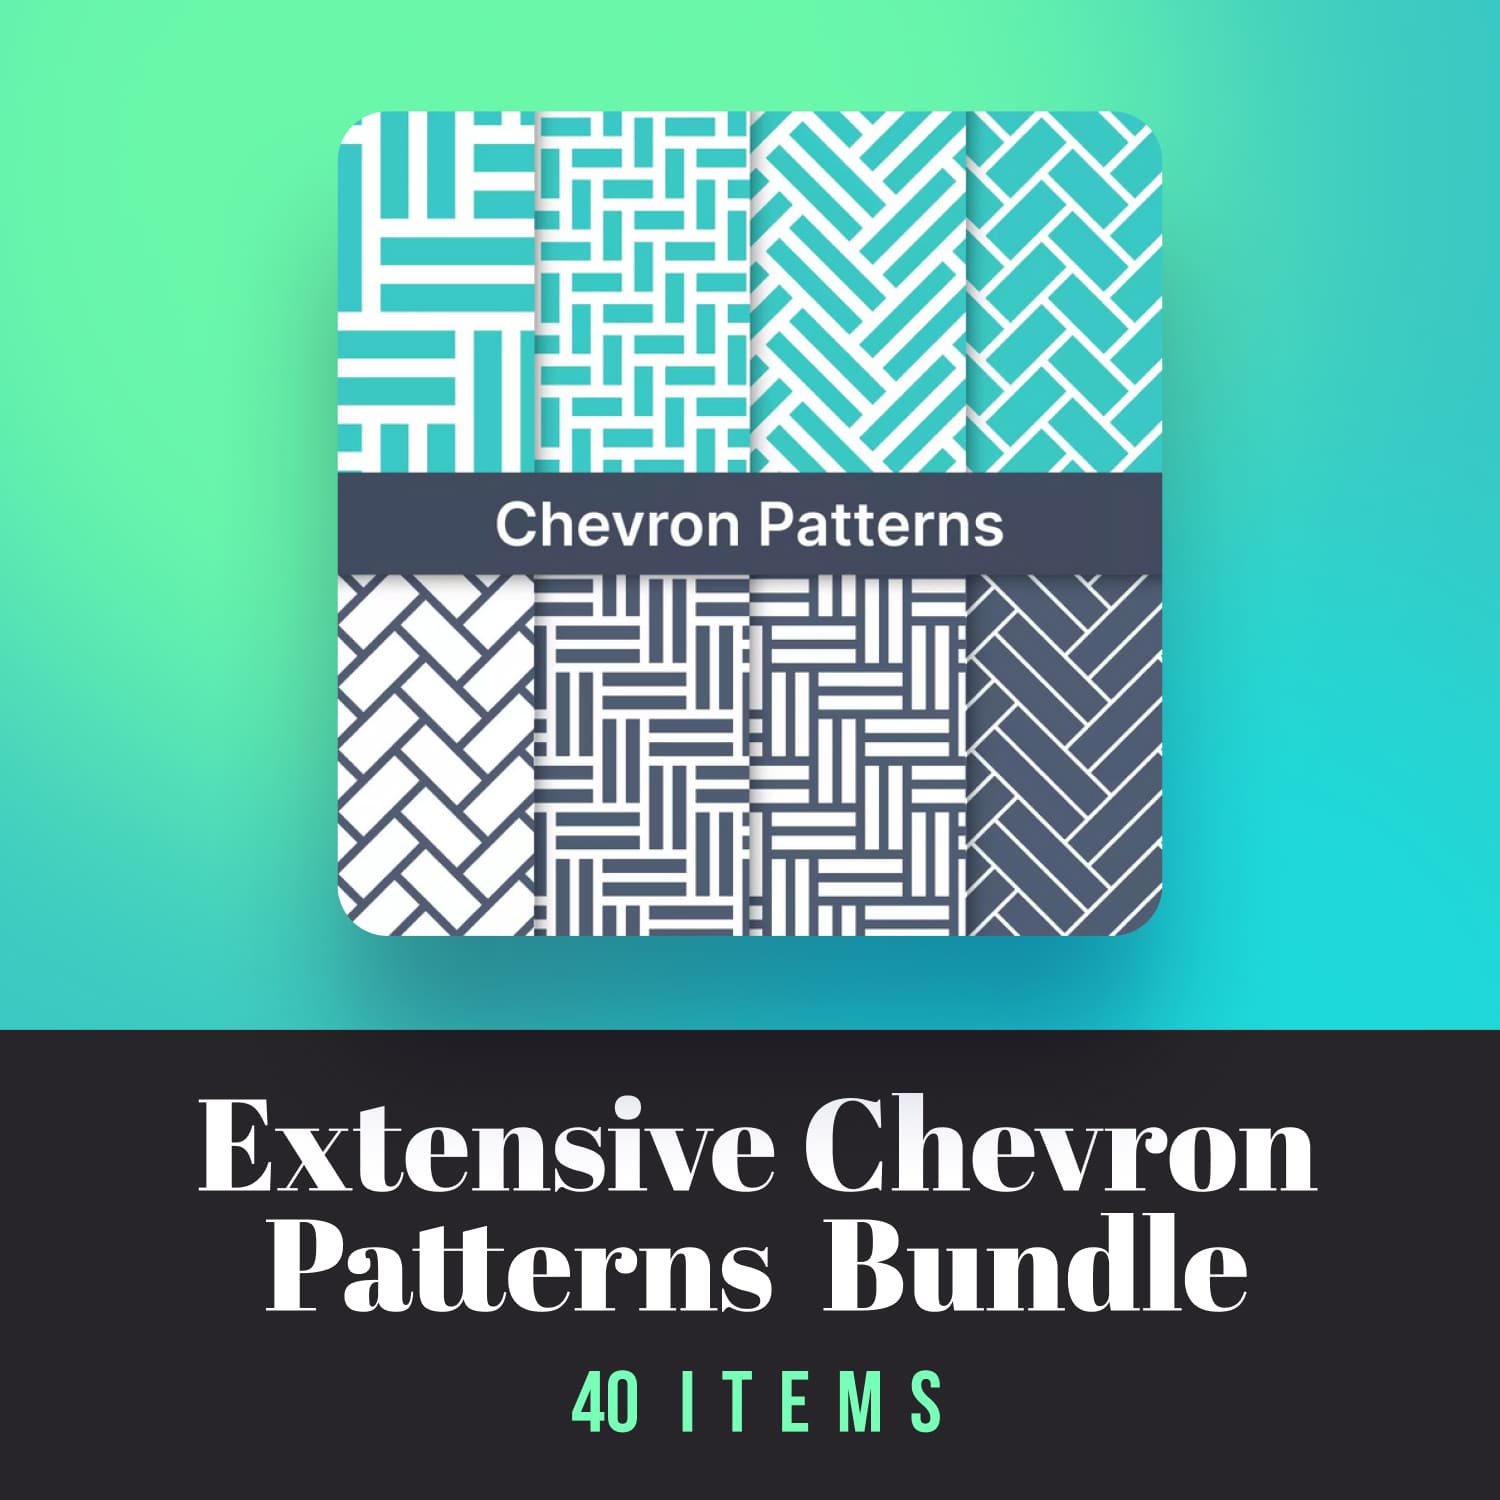 Extensive Chevron Patterns Bundle 40 Items 1500 1.